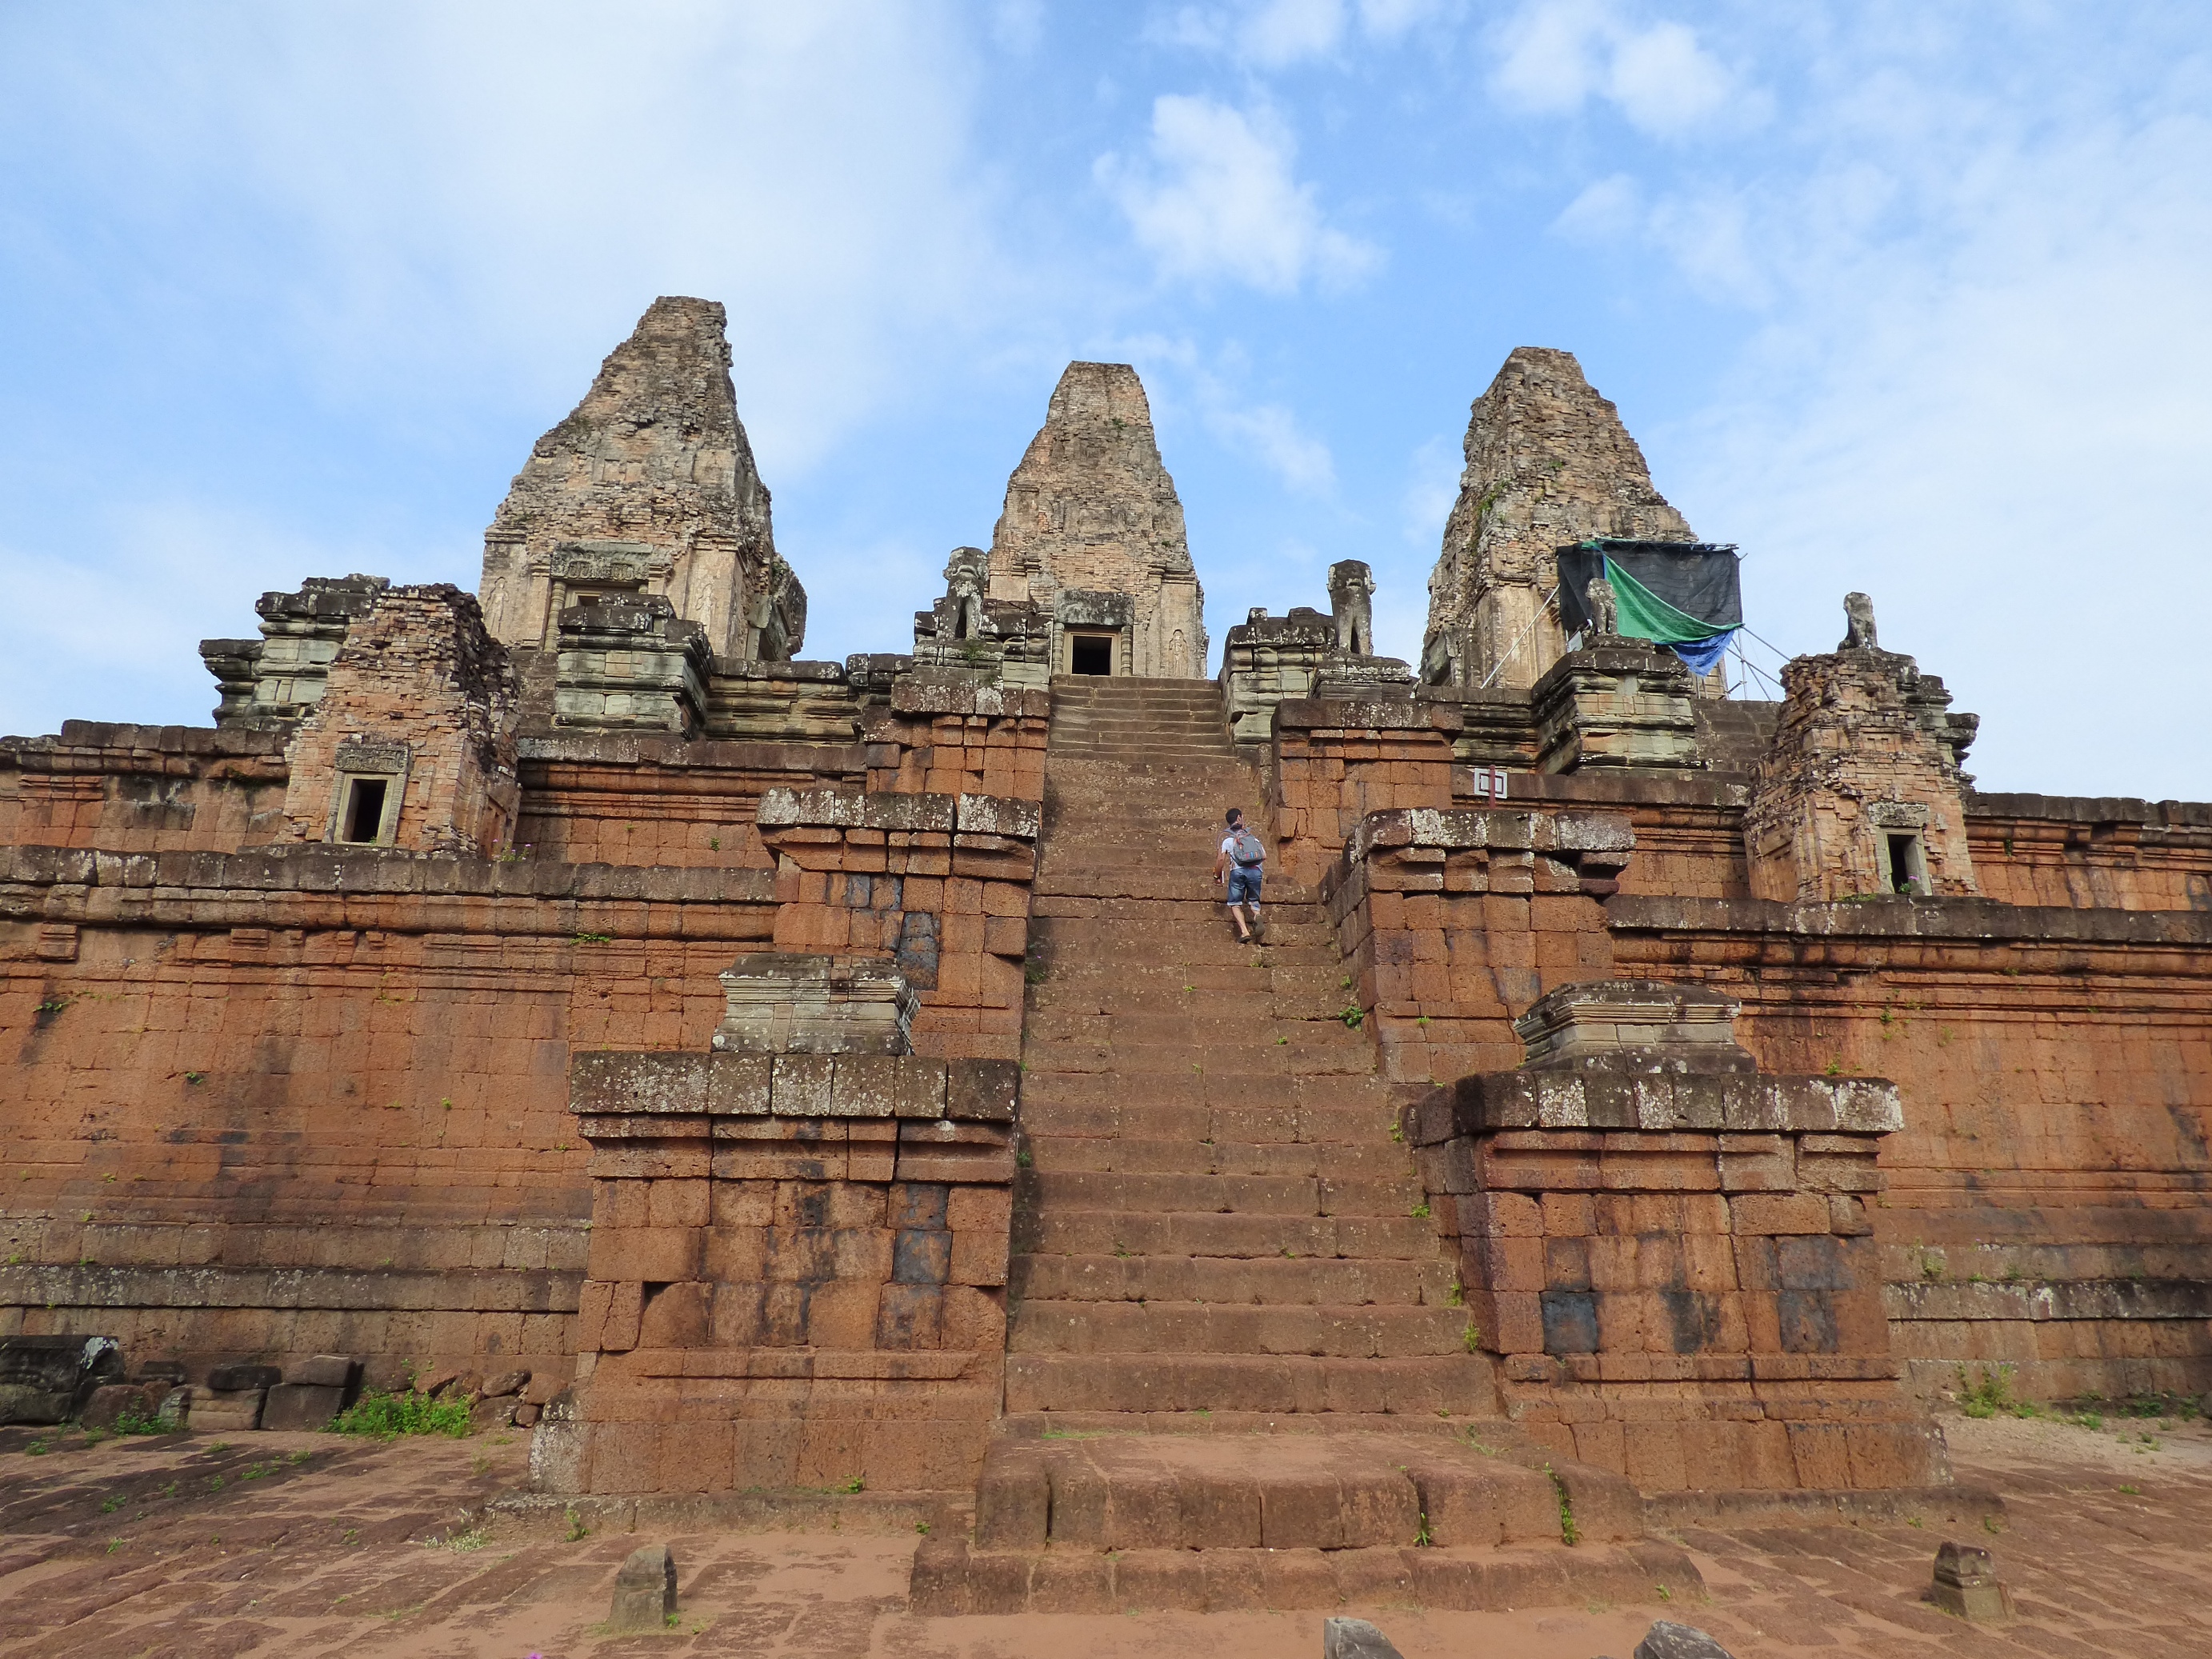 A mesterséges szigetre épült szimbolikus „templomhegy” központja a 3 szintes vörös téglából épült piramis templom.